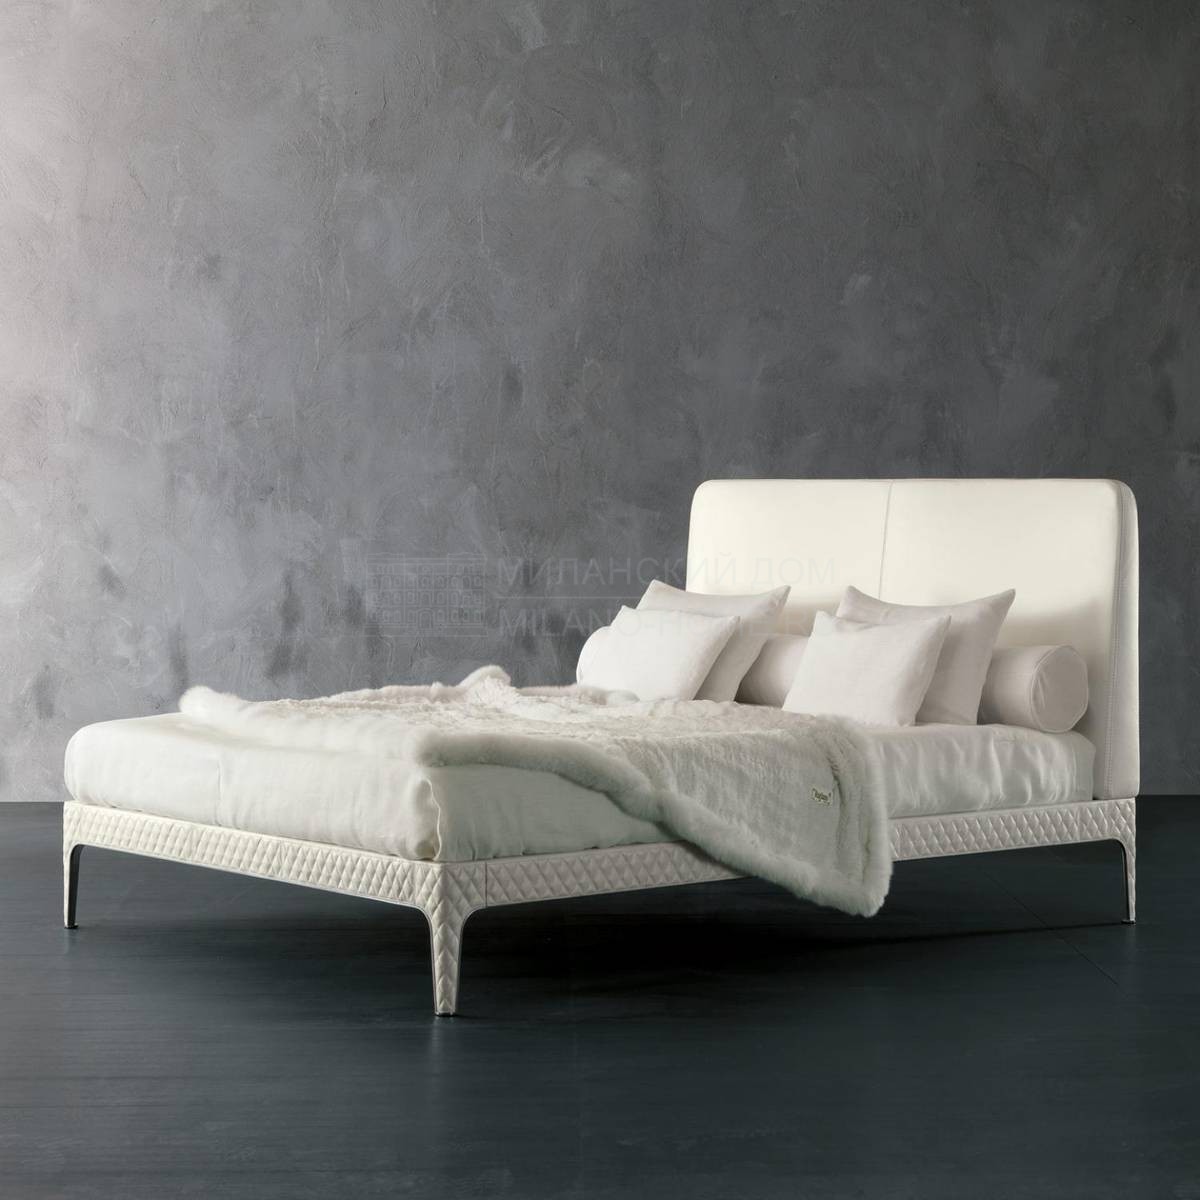 Кровать с мягким изголовьем Marlon/W03 из Италии фабрики RUGIANO